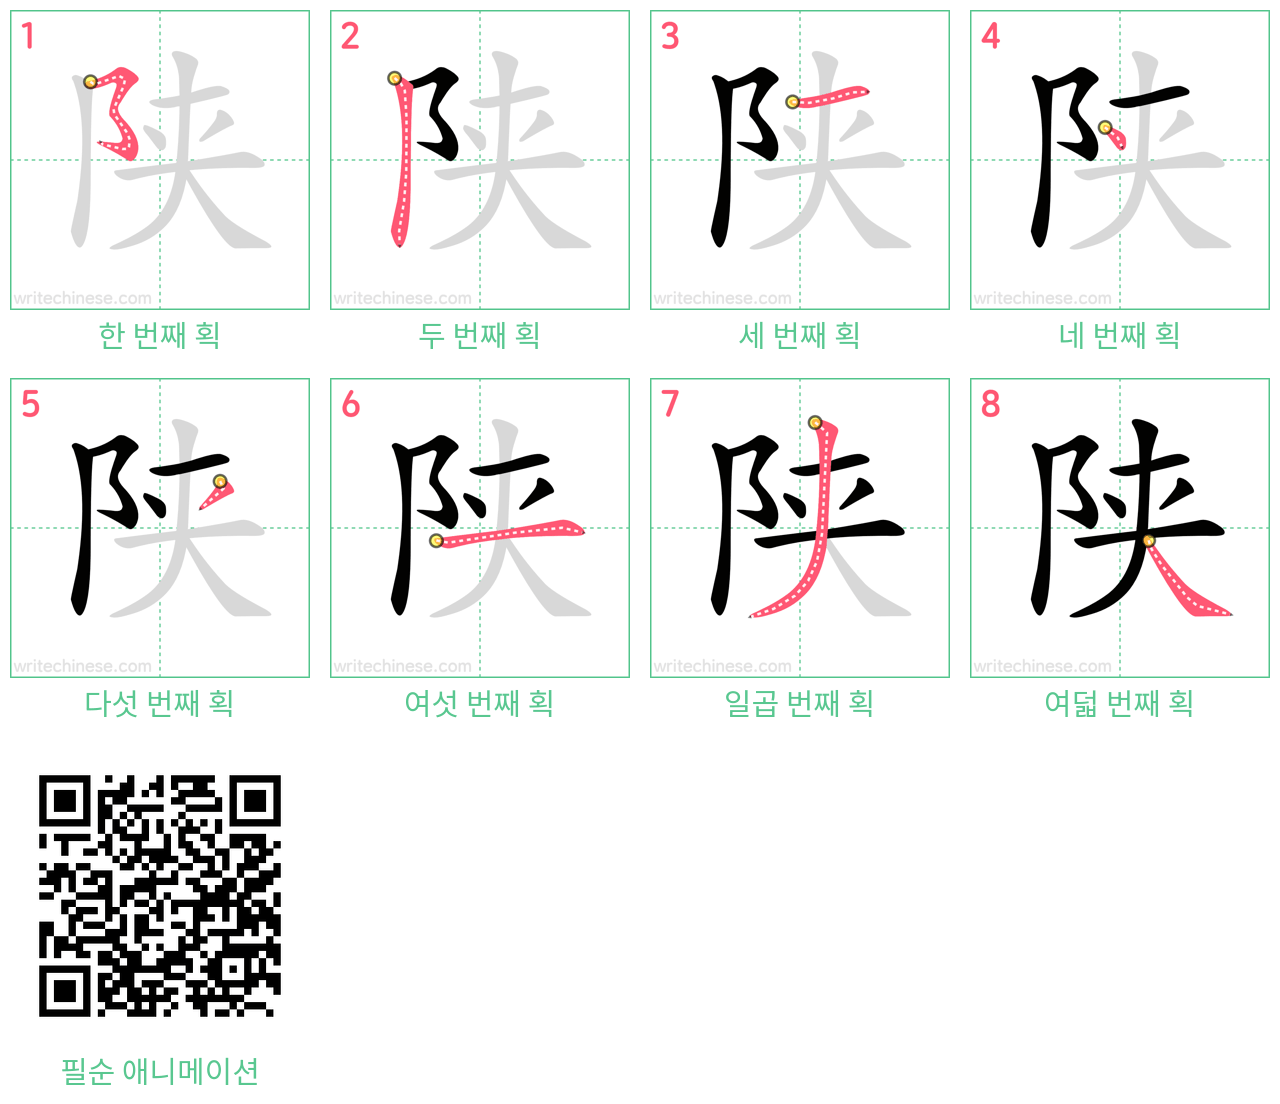 陕 step-by-step stroke order diagrams